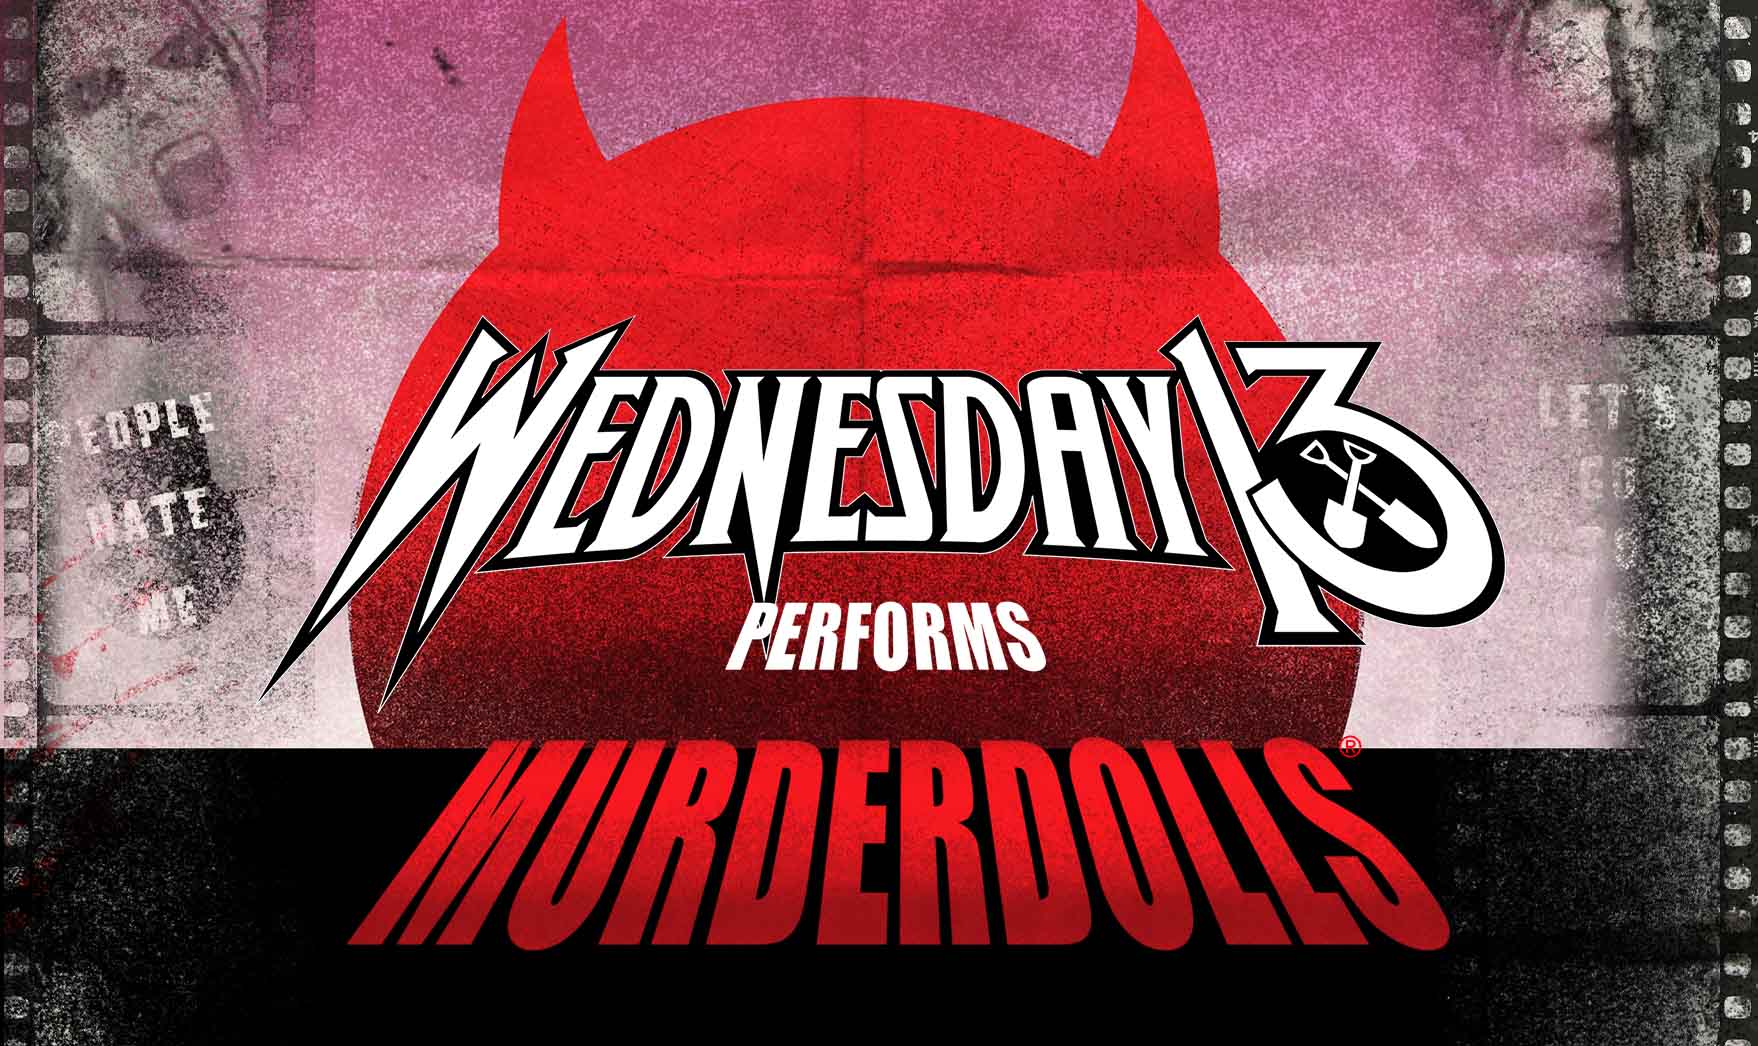 Wednesday 13 Performing Murderdolls in der Rock City Nottingham Tickets